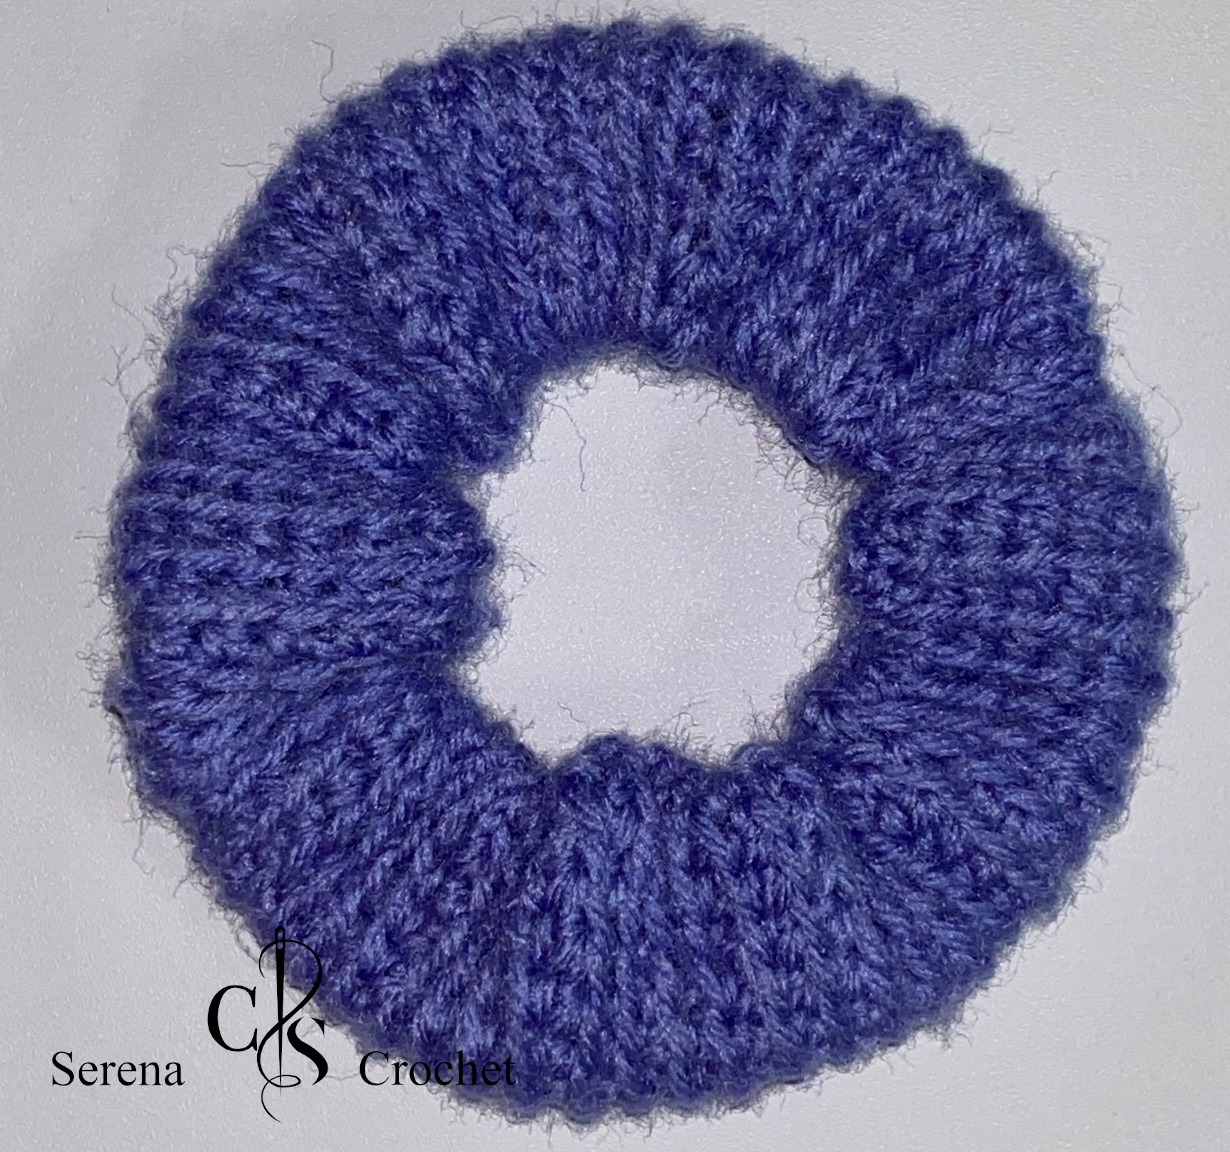 Sac au crochet au feuilles 3D en relief écru - Serena Crochet